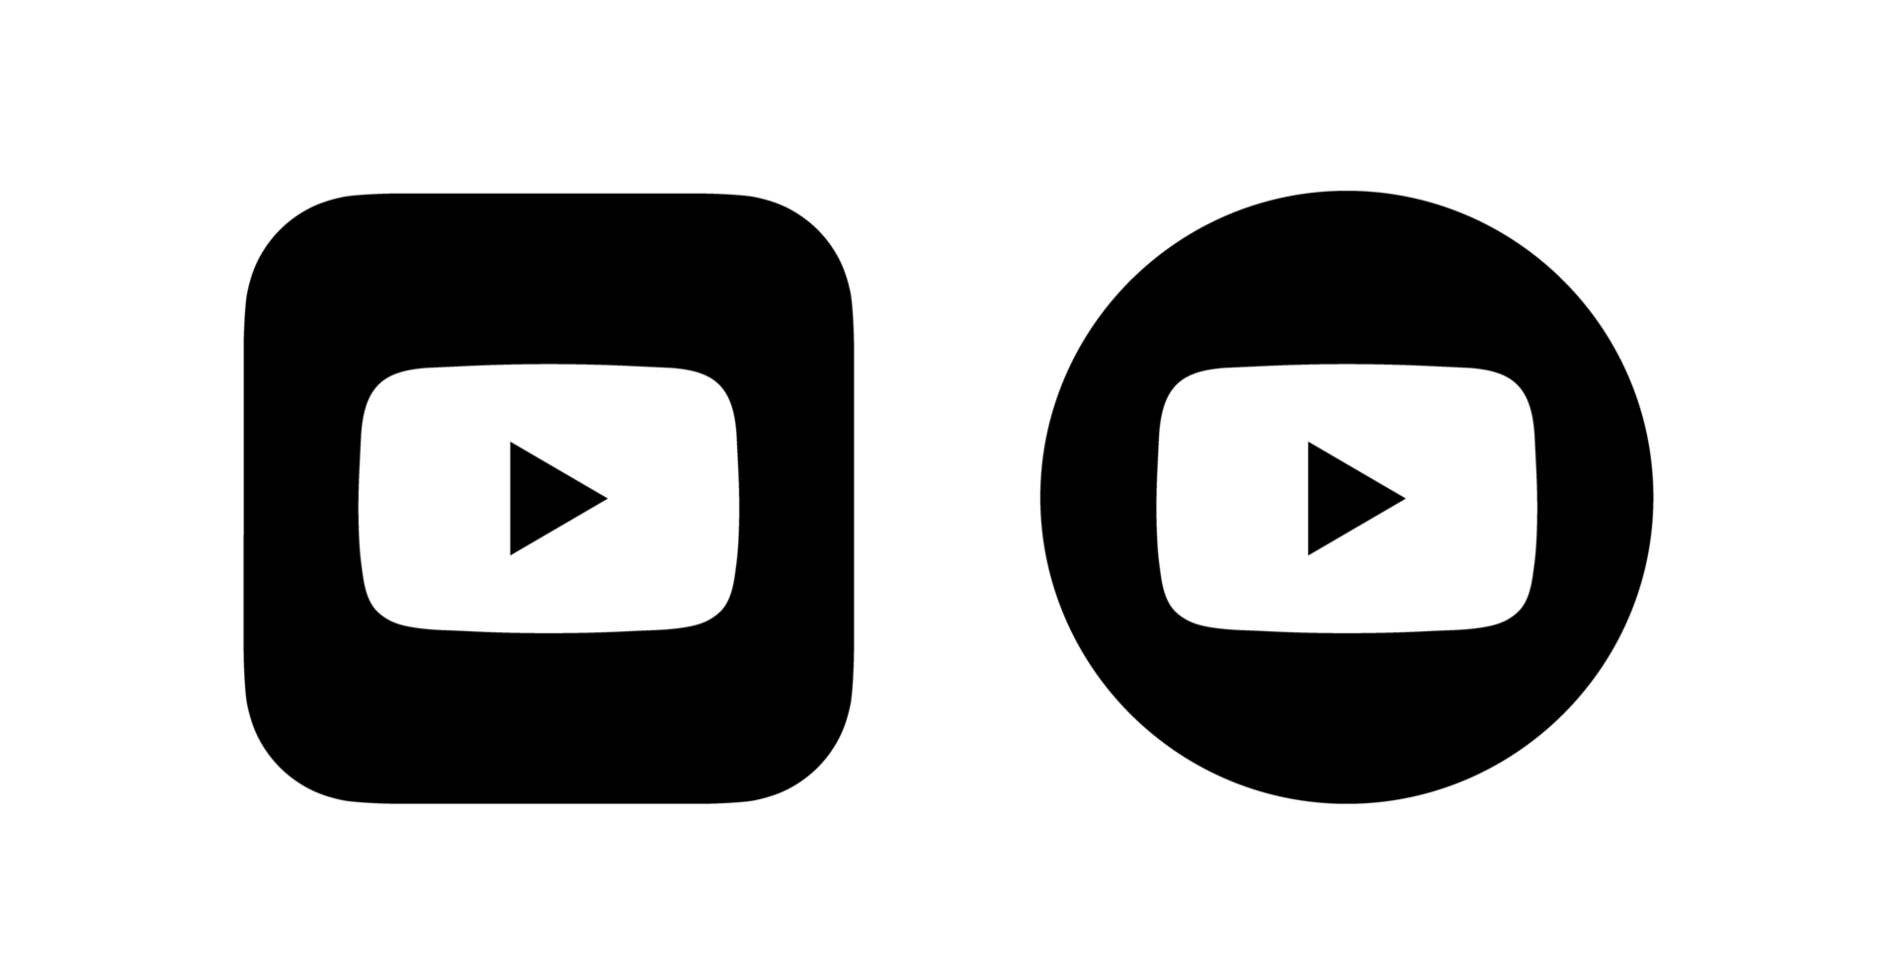 Cho dù trên trang web của mình hay trên các thiết bị điện tử khác, bộ sưu tập logo YouTube trong suốt của chúng tôi sẽ làm tăng sự chuyên nghiệp và thủ pháp của trang web hoặc thiết bị của bạn. Hãy tải ngay để trải nghiệm.